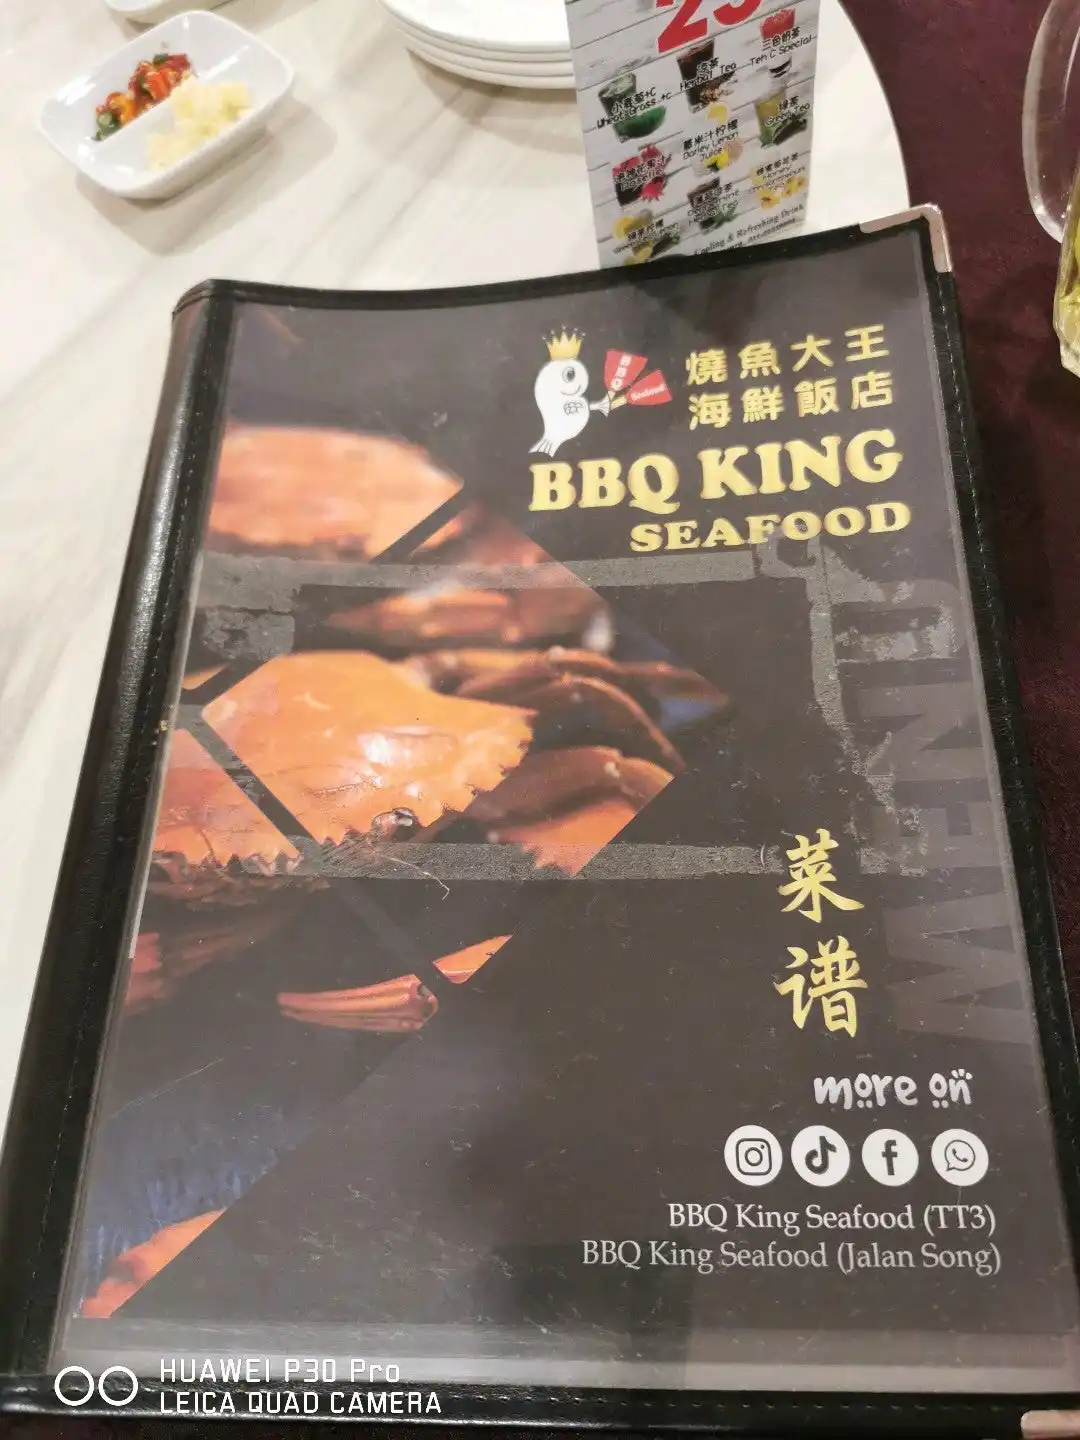 BBQ King Seafood